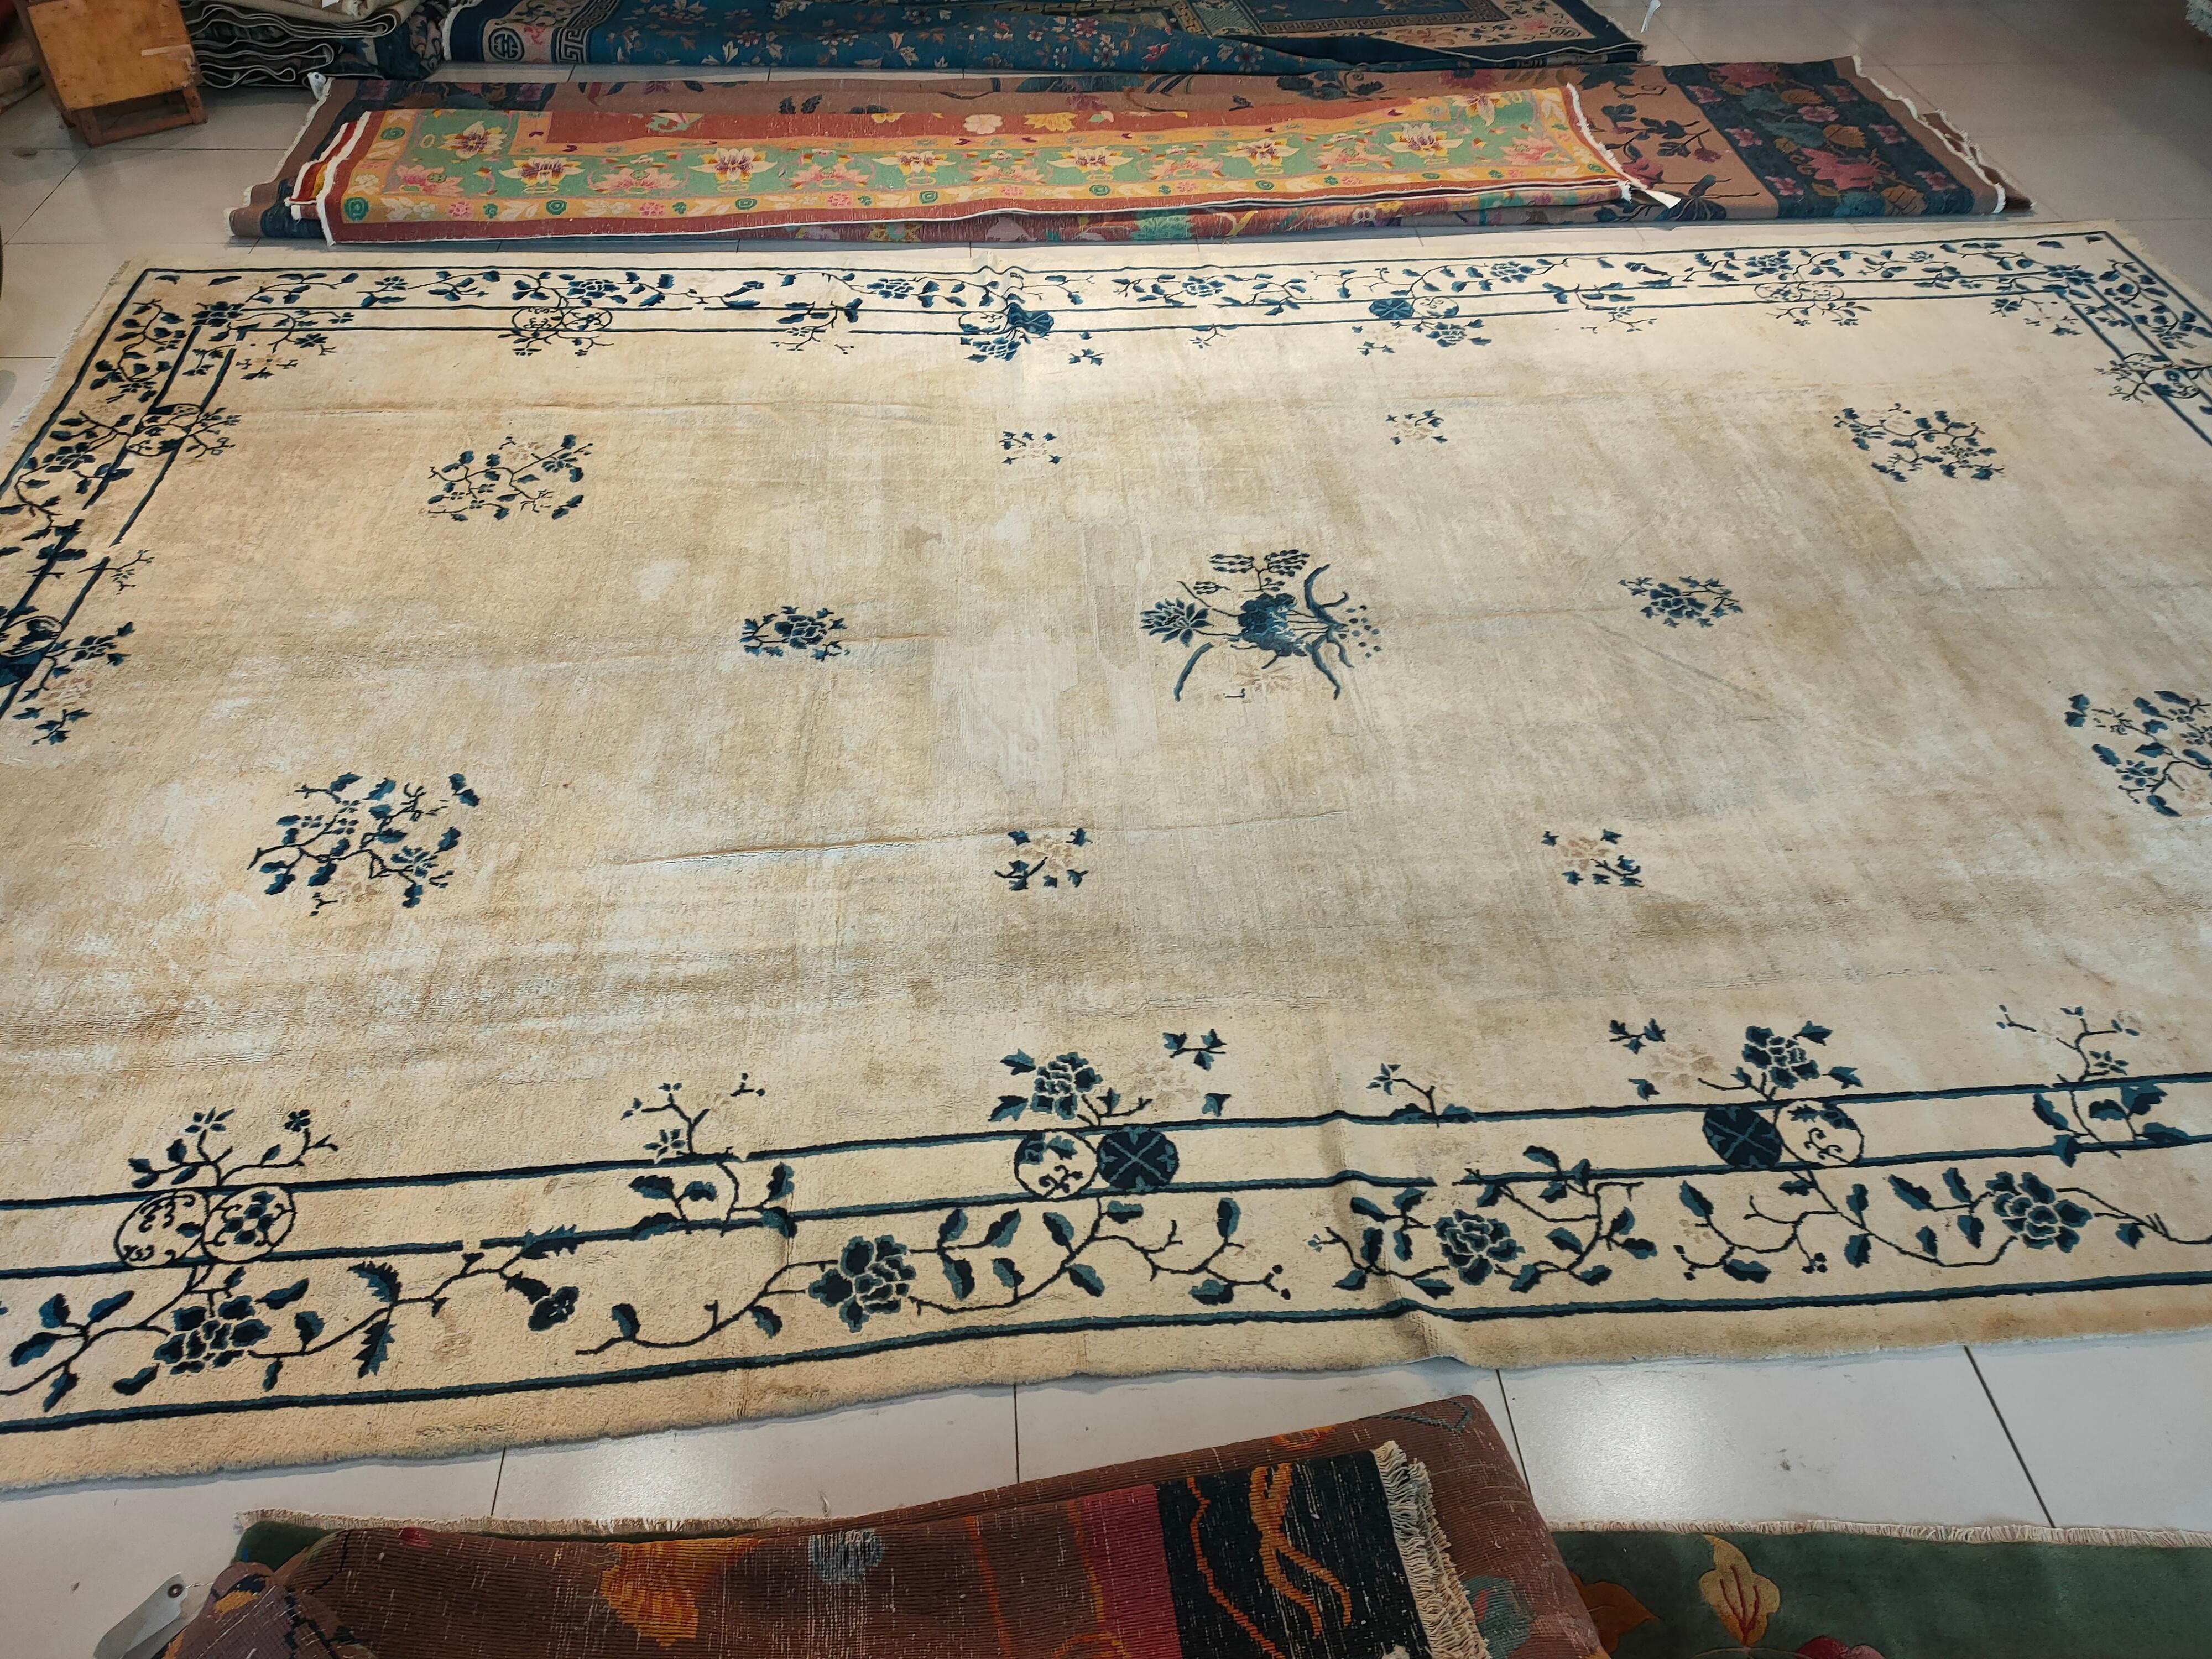 Chinesischer Peking-Teppich des frühen 20. Jahrhunderts ( 10'10